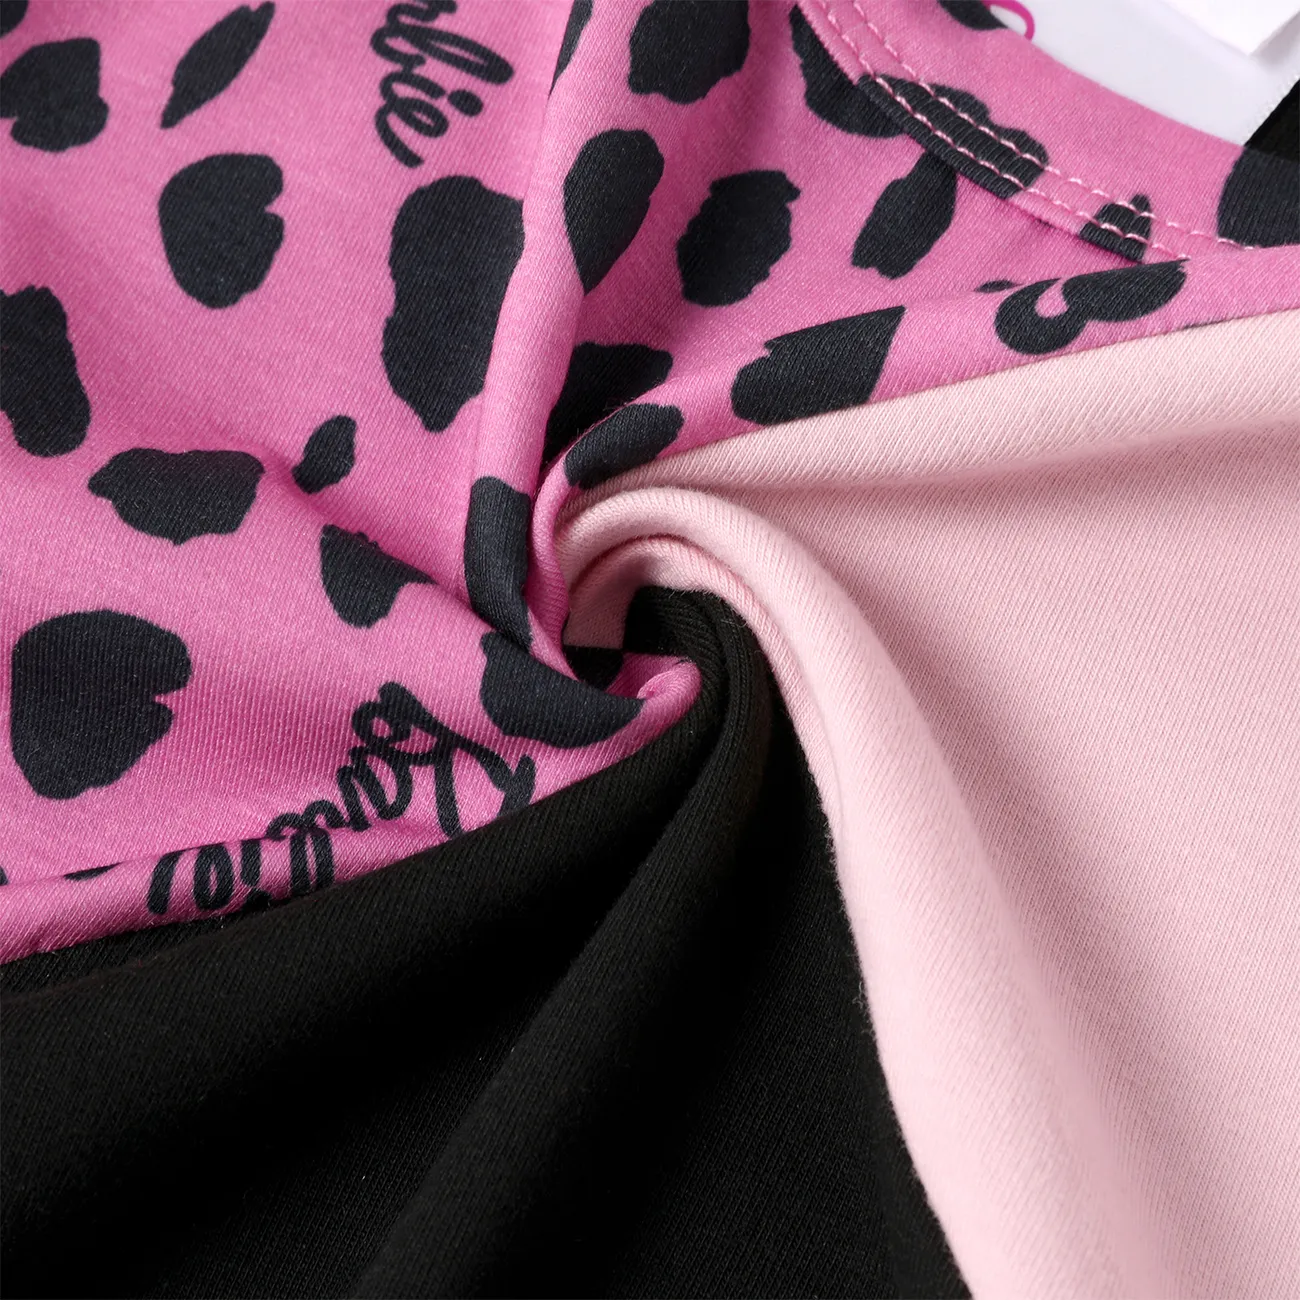 باربي طفل / طفل فتاة ليوبارد / طباعة ملونة نايا™ فستان قصير الأكمام مع فاني باك كتلة اللون big image 1